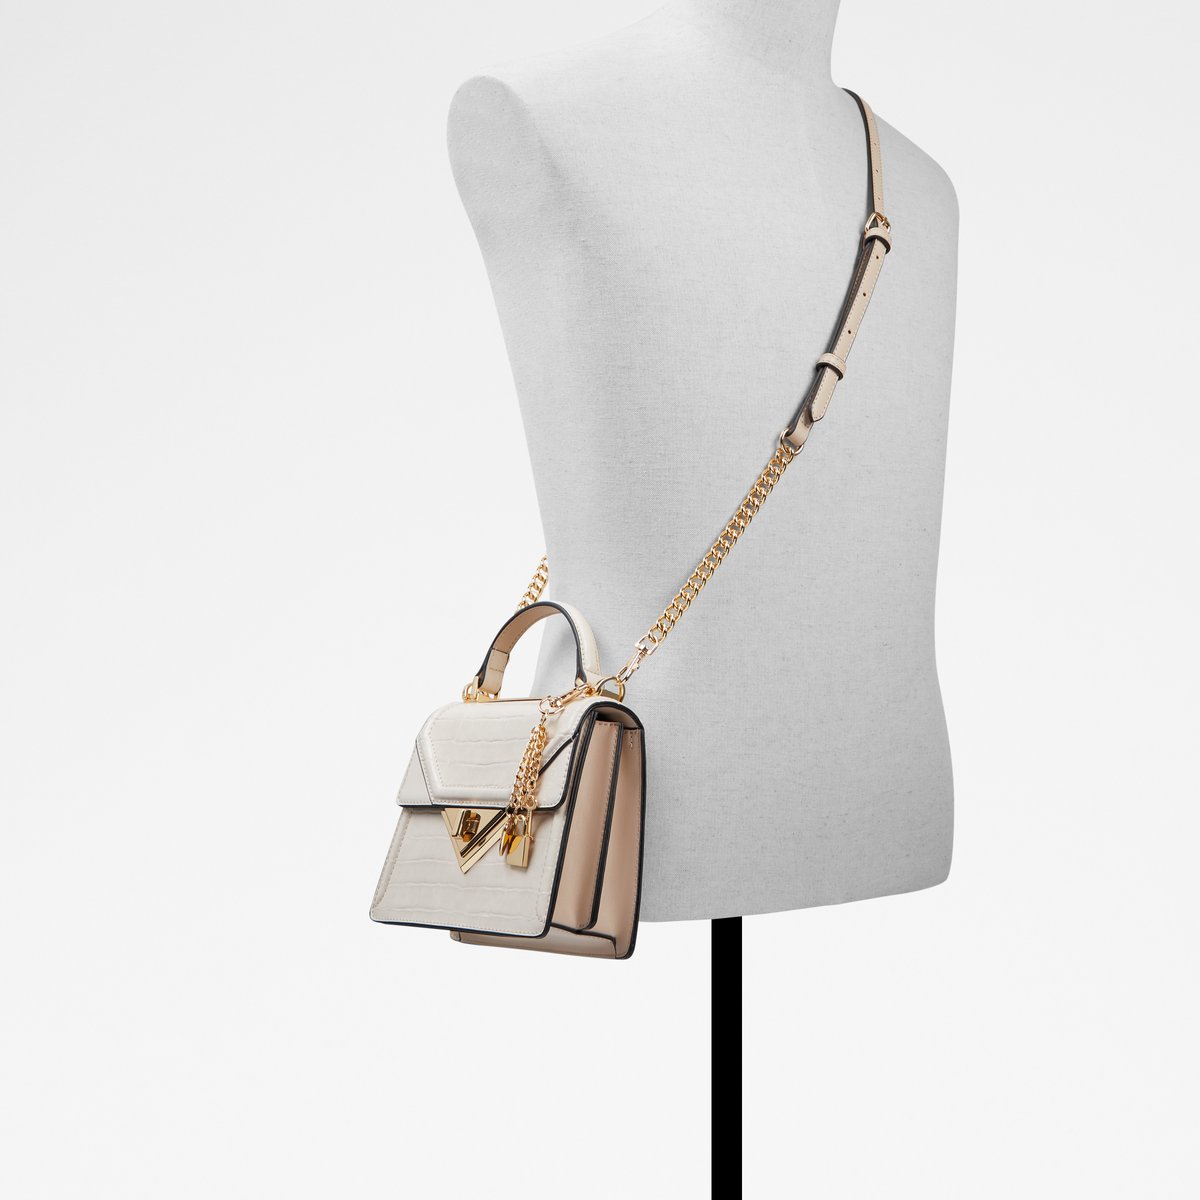 Embie Bone Women's Top Handle Bags | ALDO US